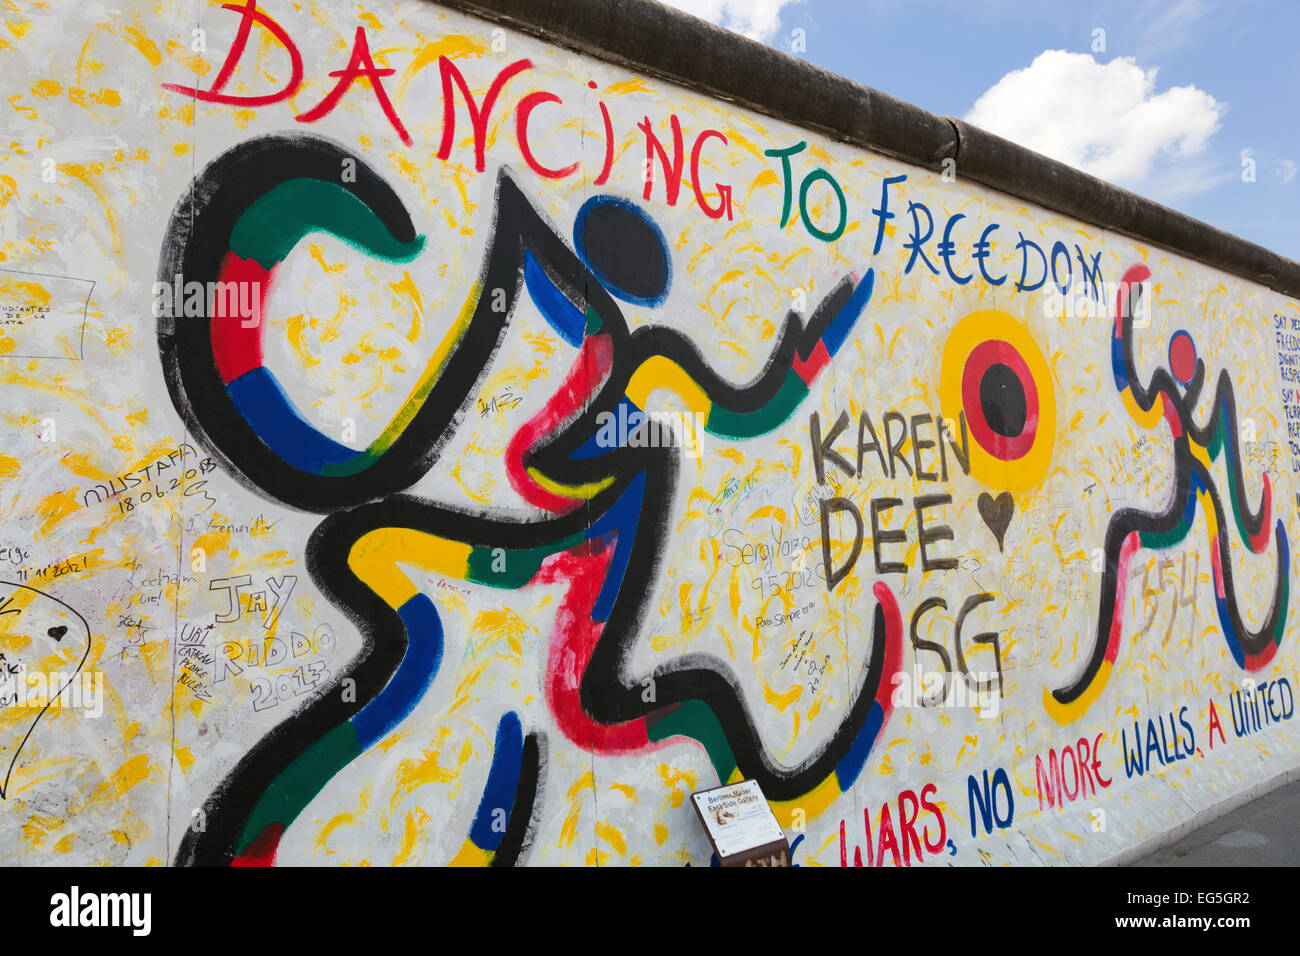 Berlino, 26 Luglio: Graffiti presso la East Side Gallery sulla luglio 26, 2013 a Berlino, Germania. Esso documenta un momento di cambiamento e di speranze. Foto Stock